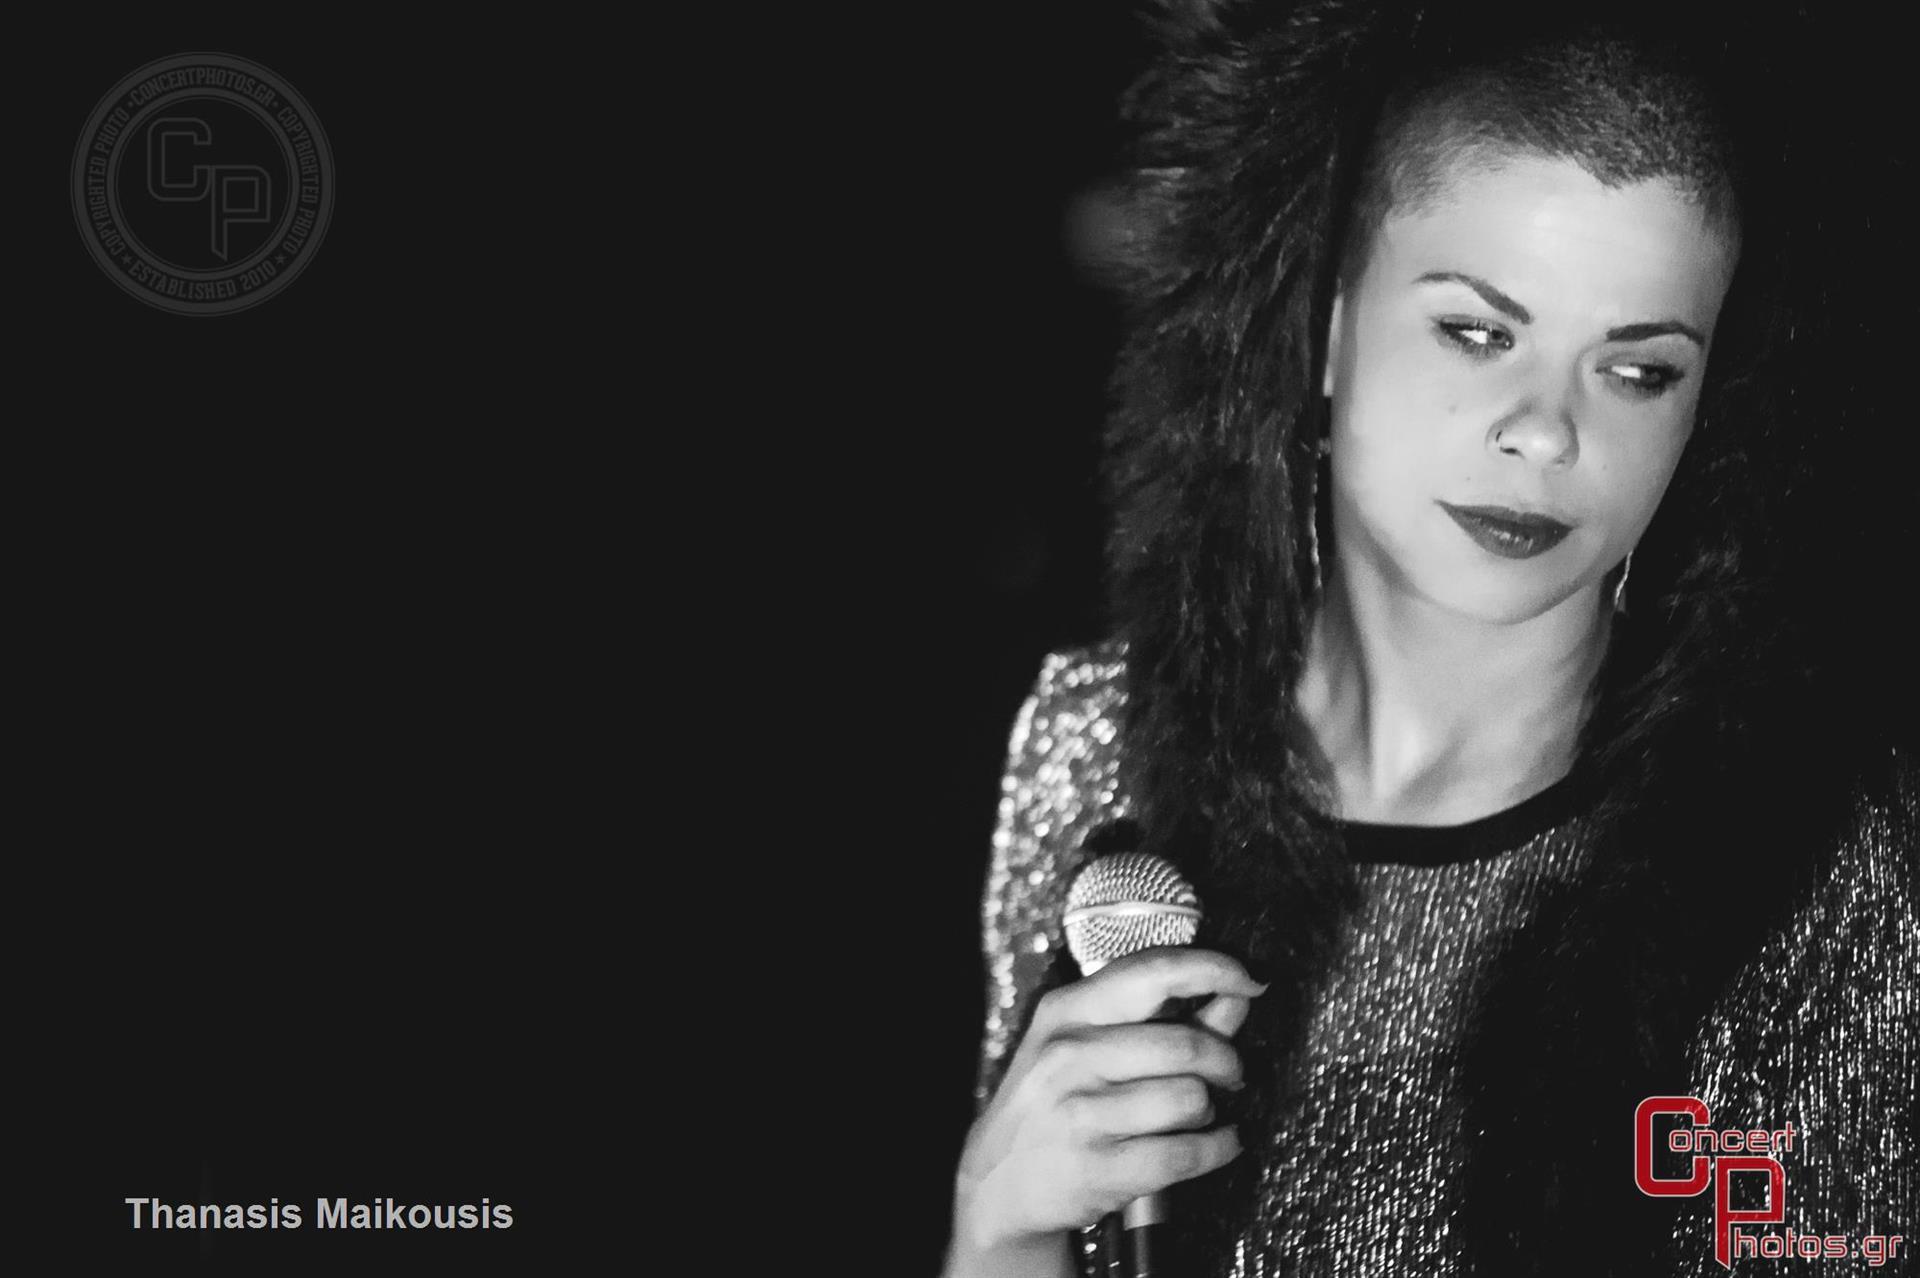 Kovacs Moka Band Angelika Dusk Greeklish Babylon-Kovacs Moka Band Angelika Dusk Greeklish Babylon photographer: Thanasis Maikousis - ConcertPhotos - 20150424_2236_40-2